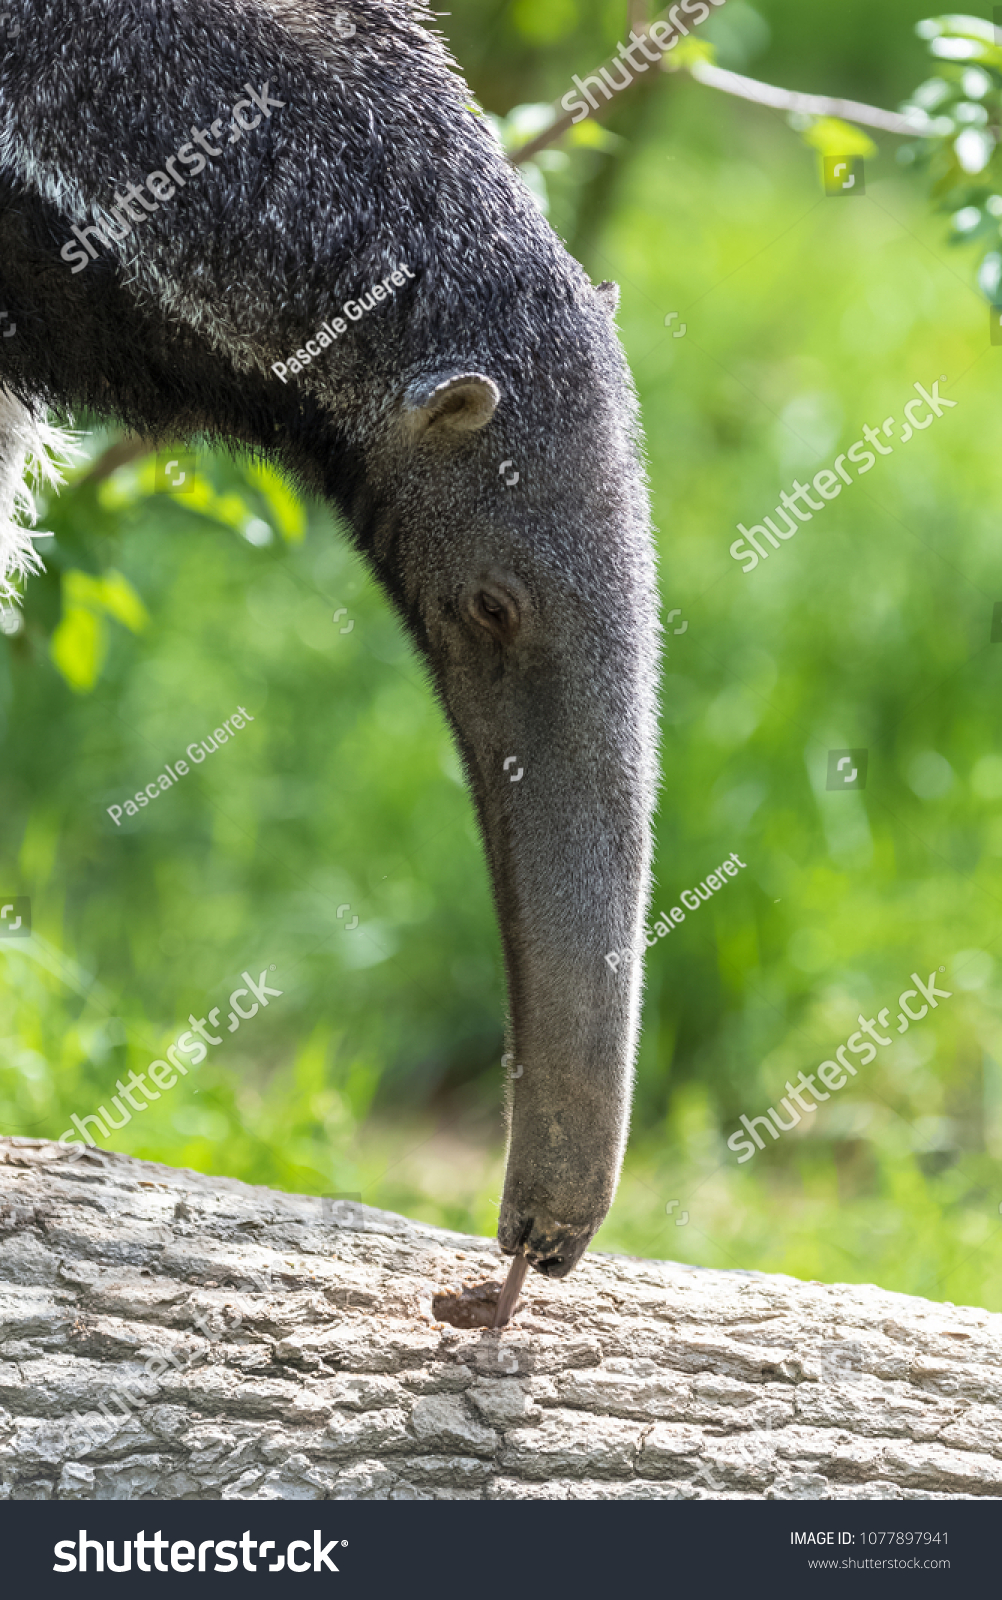 オオアリクイ 木の幹にアリを食べる動物 の写真素材 今すぐ編集